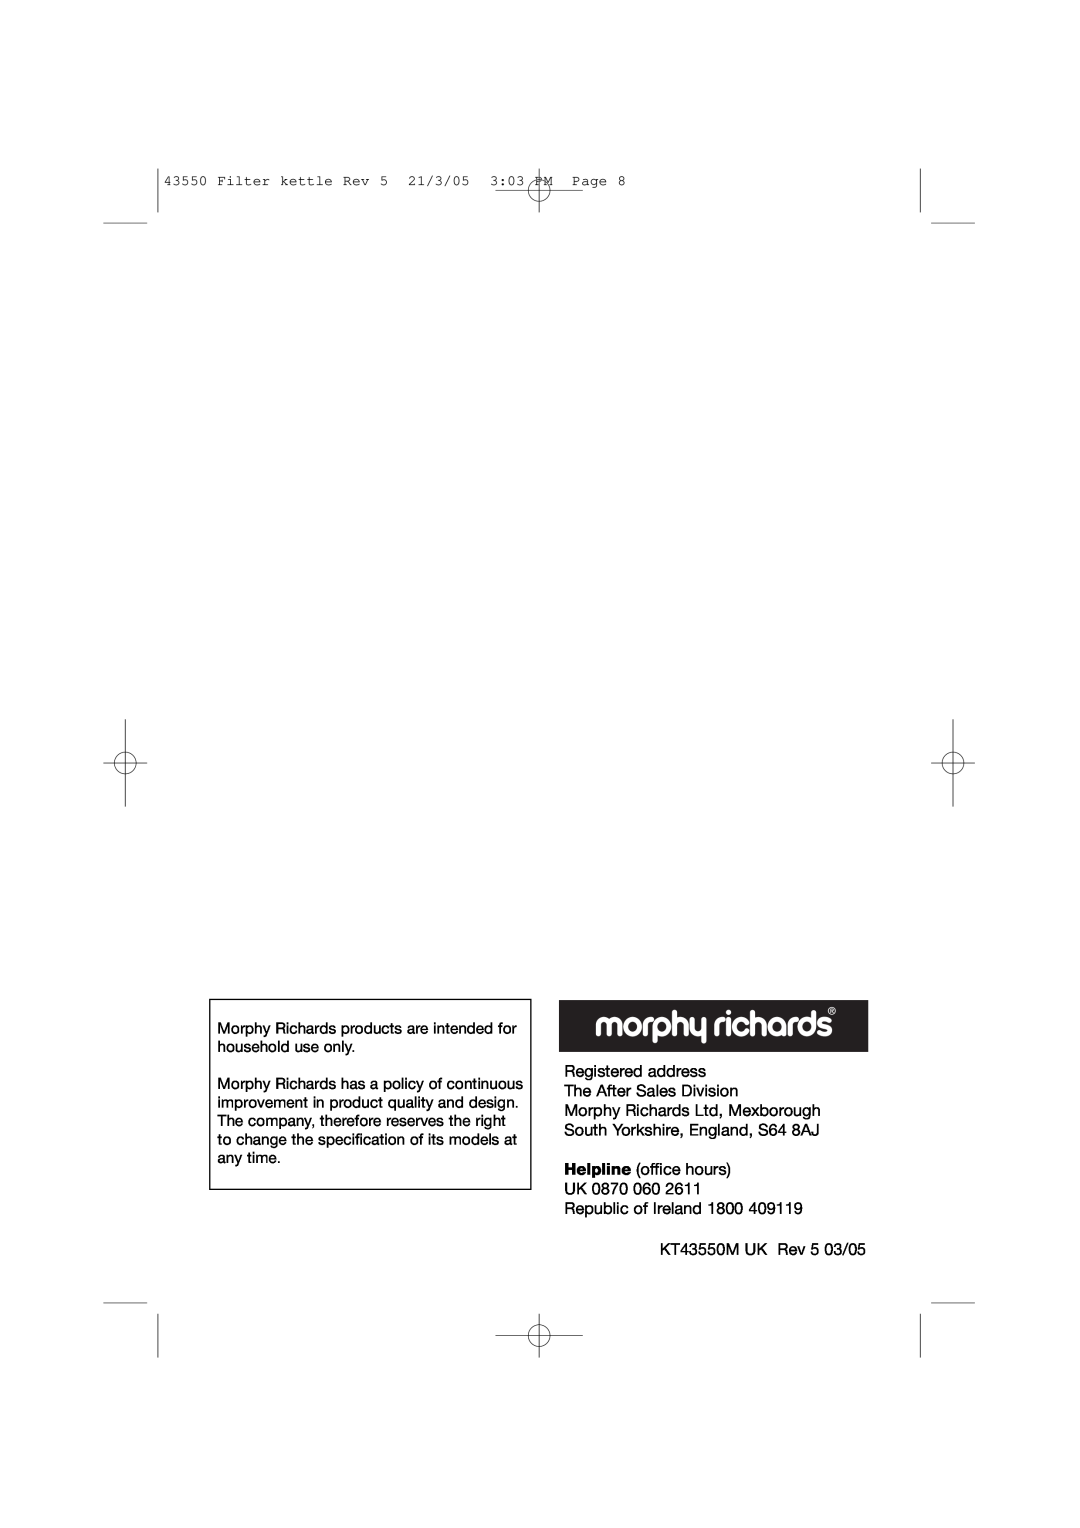 Morphy Richards Filter rapide kettle manual Registered address The After Sales Division, KT43550M UK Rev 5 03/05 